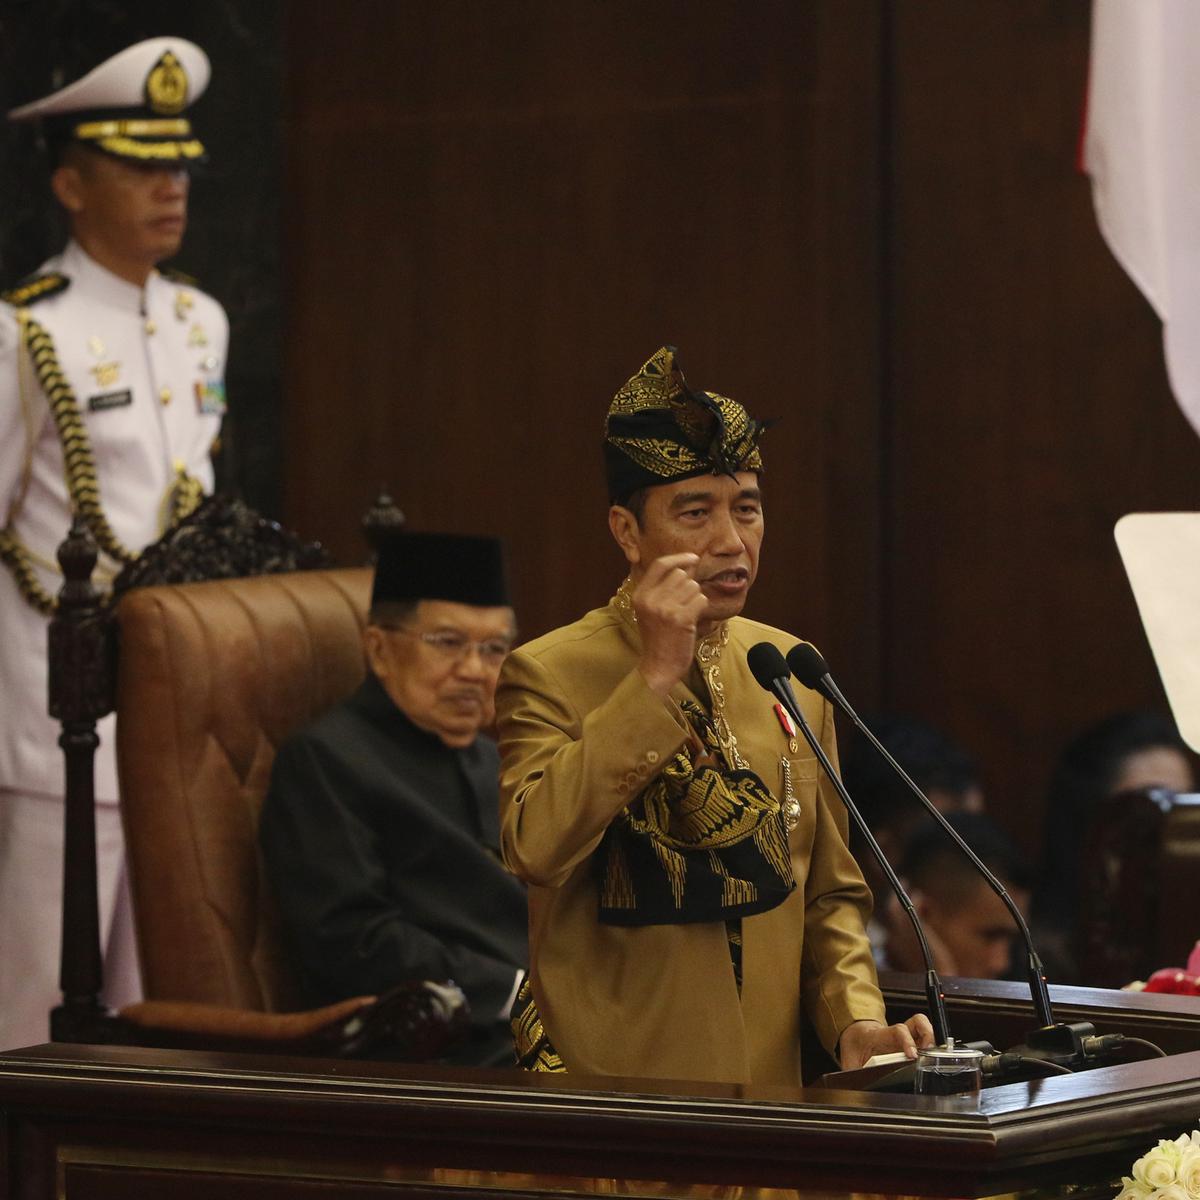 Pujian Pujian Yang Ditebar Jokowi Dalam Pidato Kenegaraan News Liputan6 Com